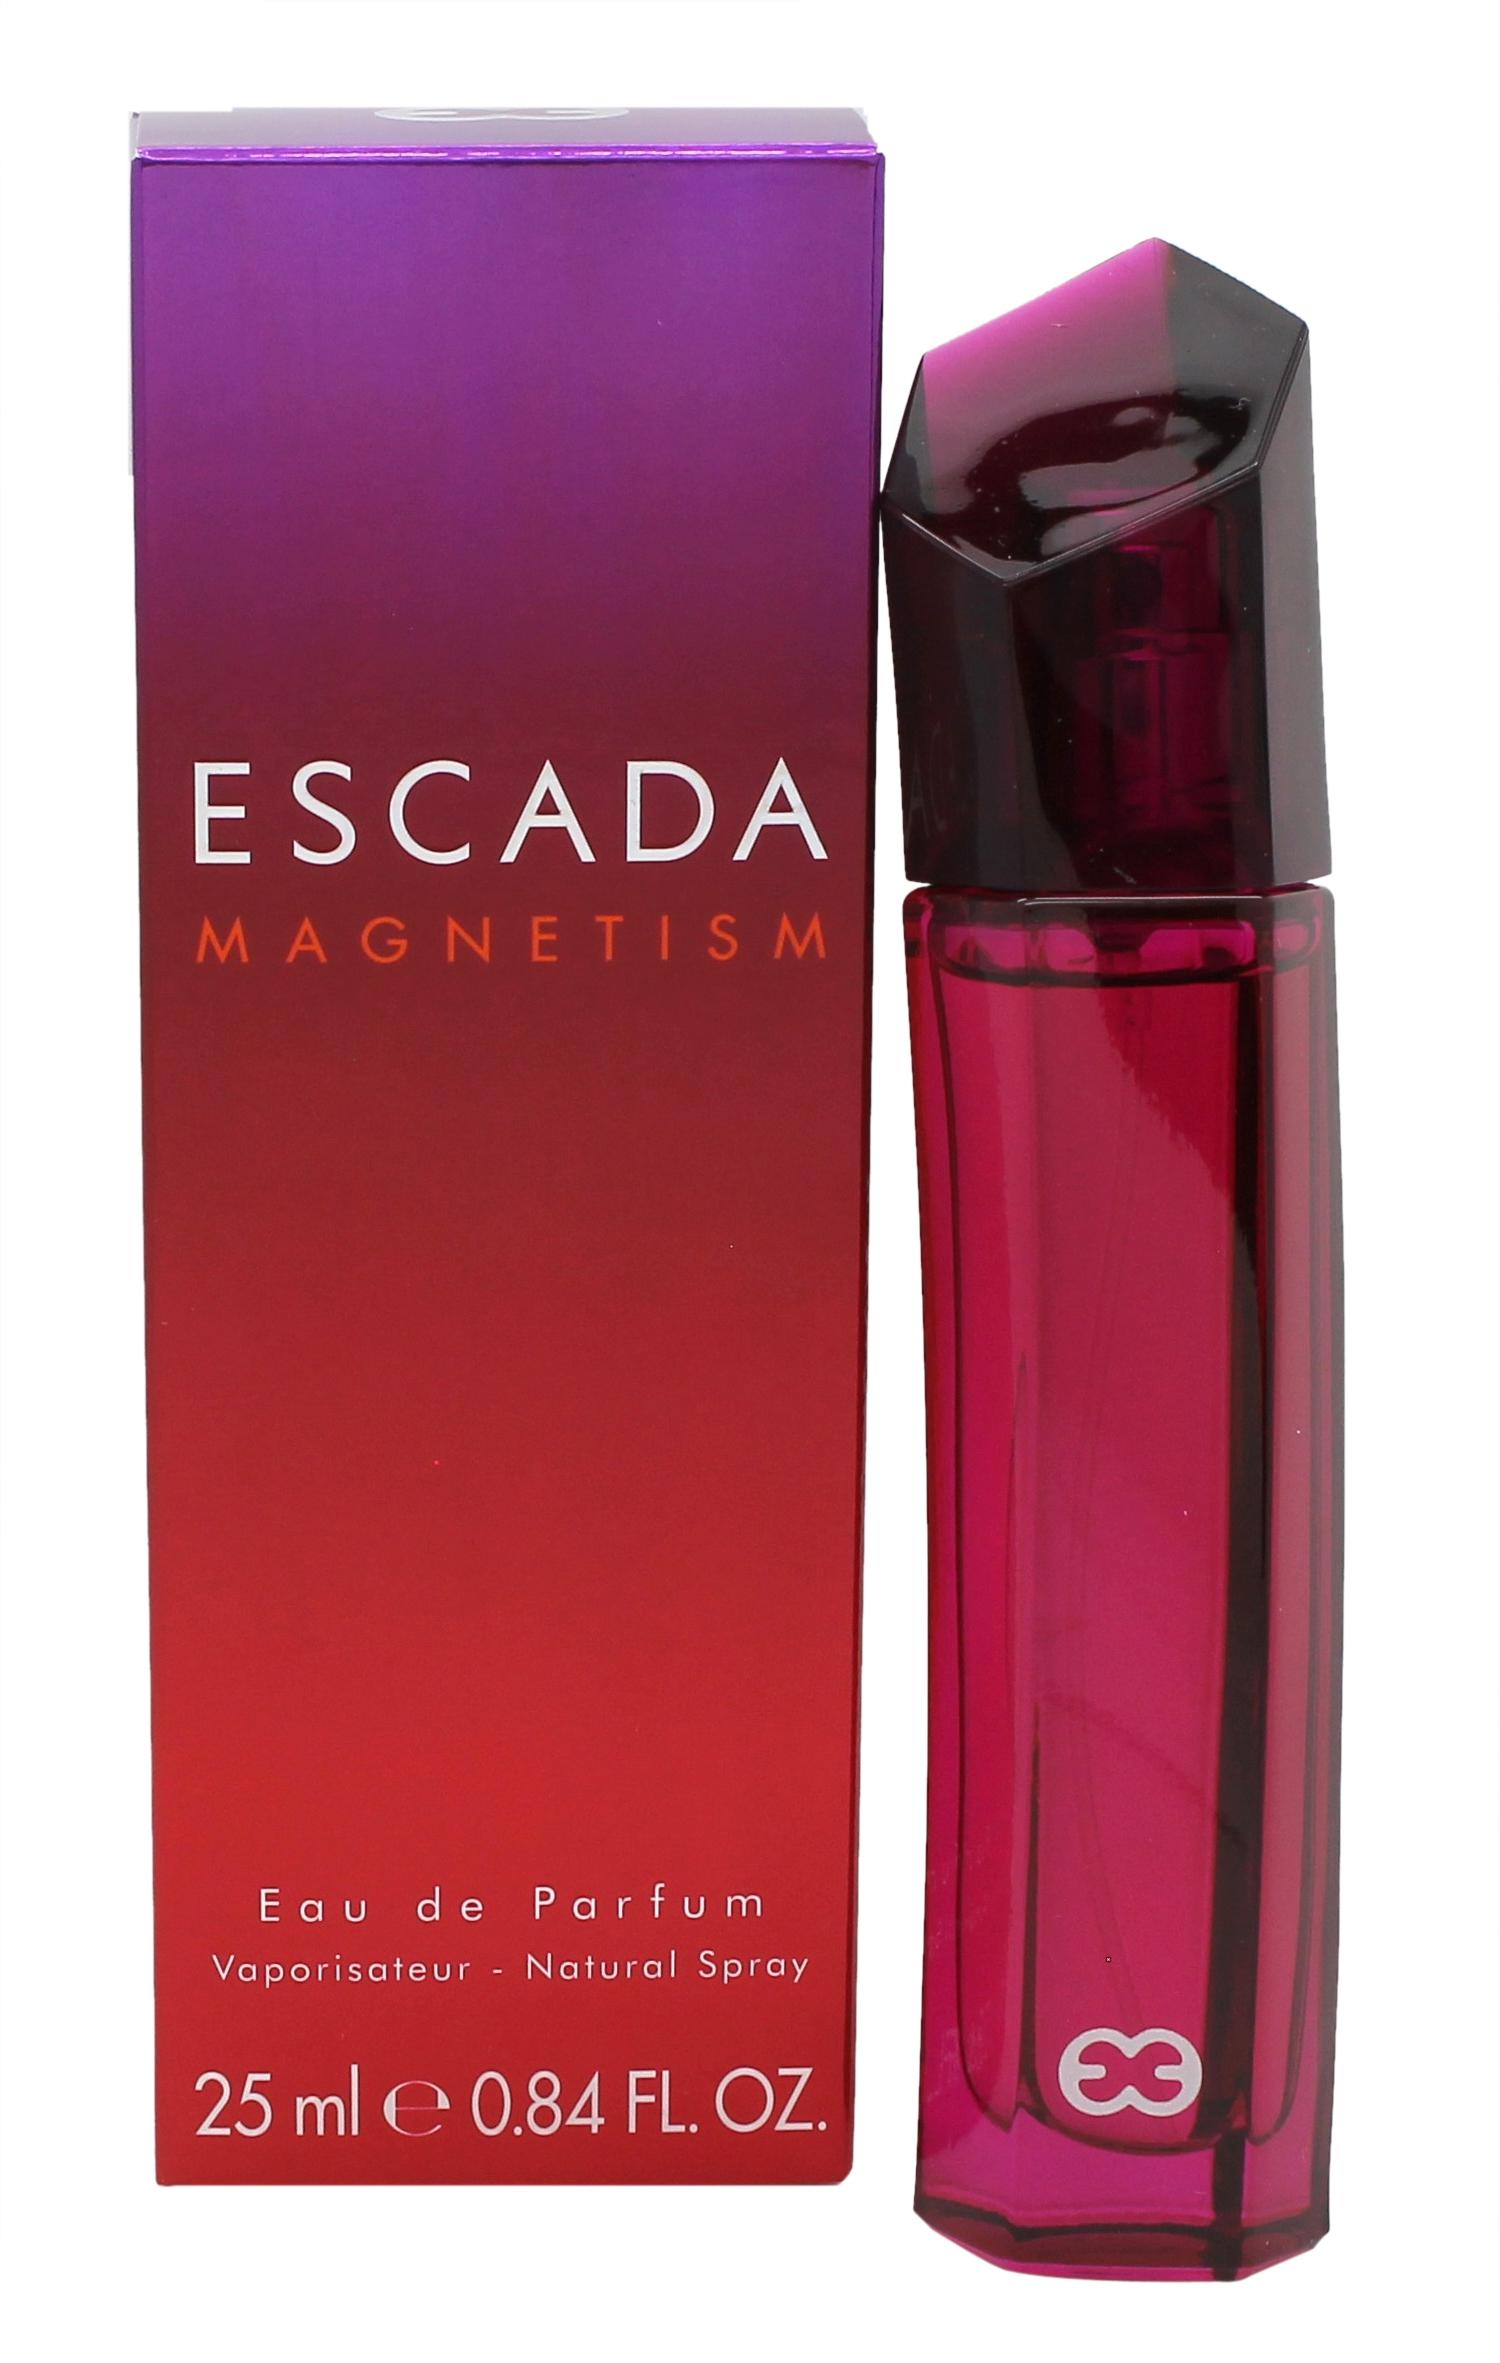 Escada Magnetism Eau de Parfum 25ml Spray